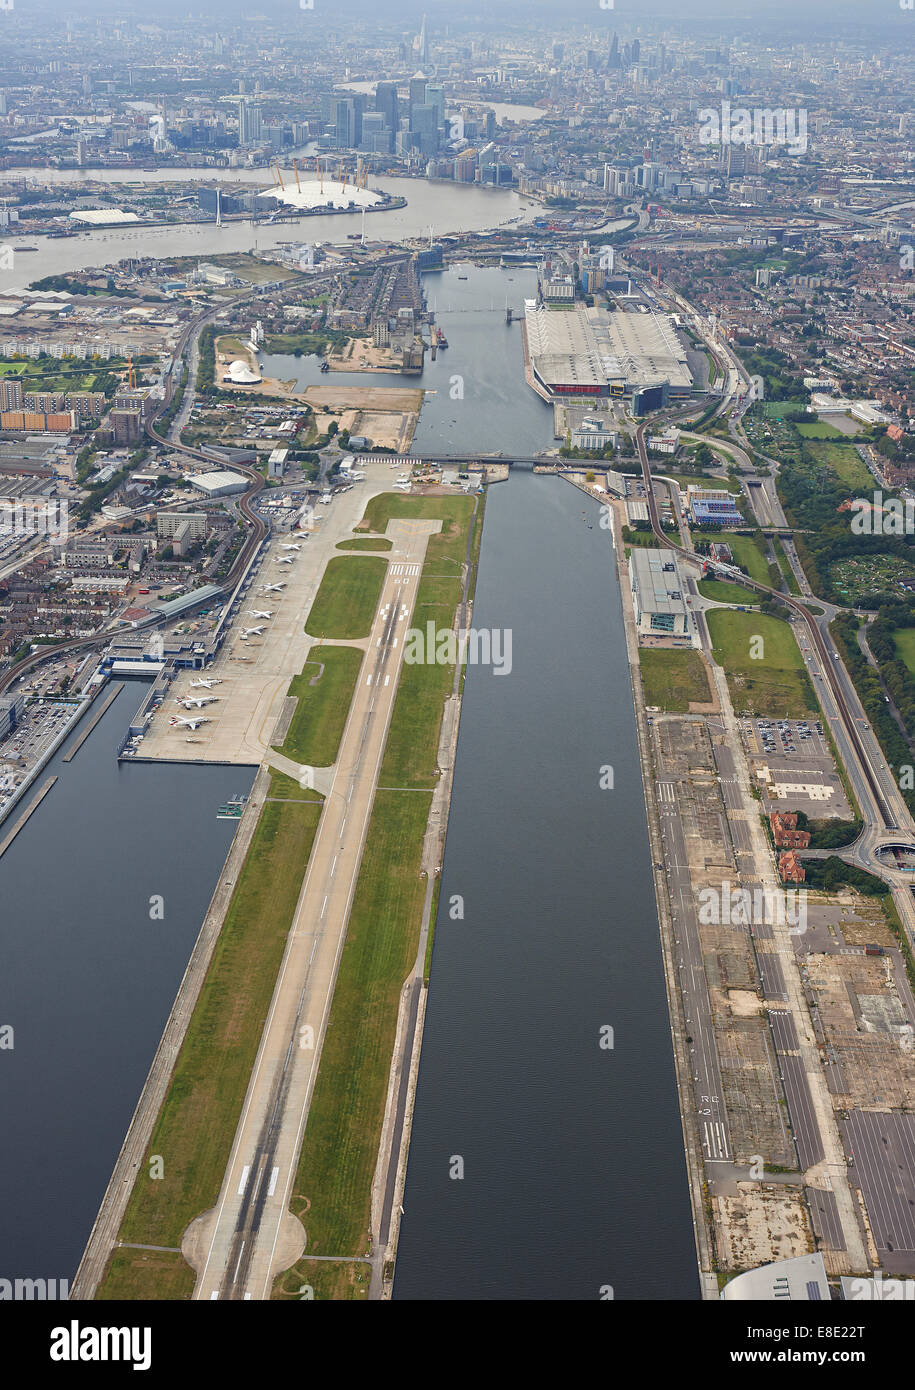 Vue aérienne de l'aéroport de London City, Docklands UK, Canary Wharf derrière Banque D'Images